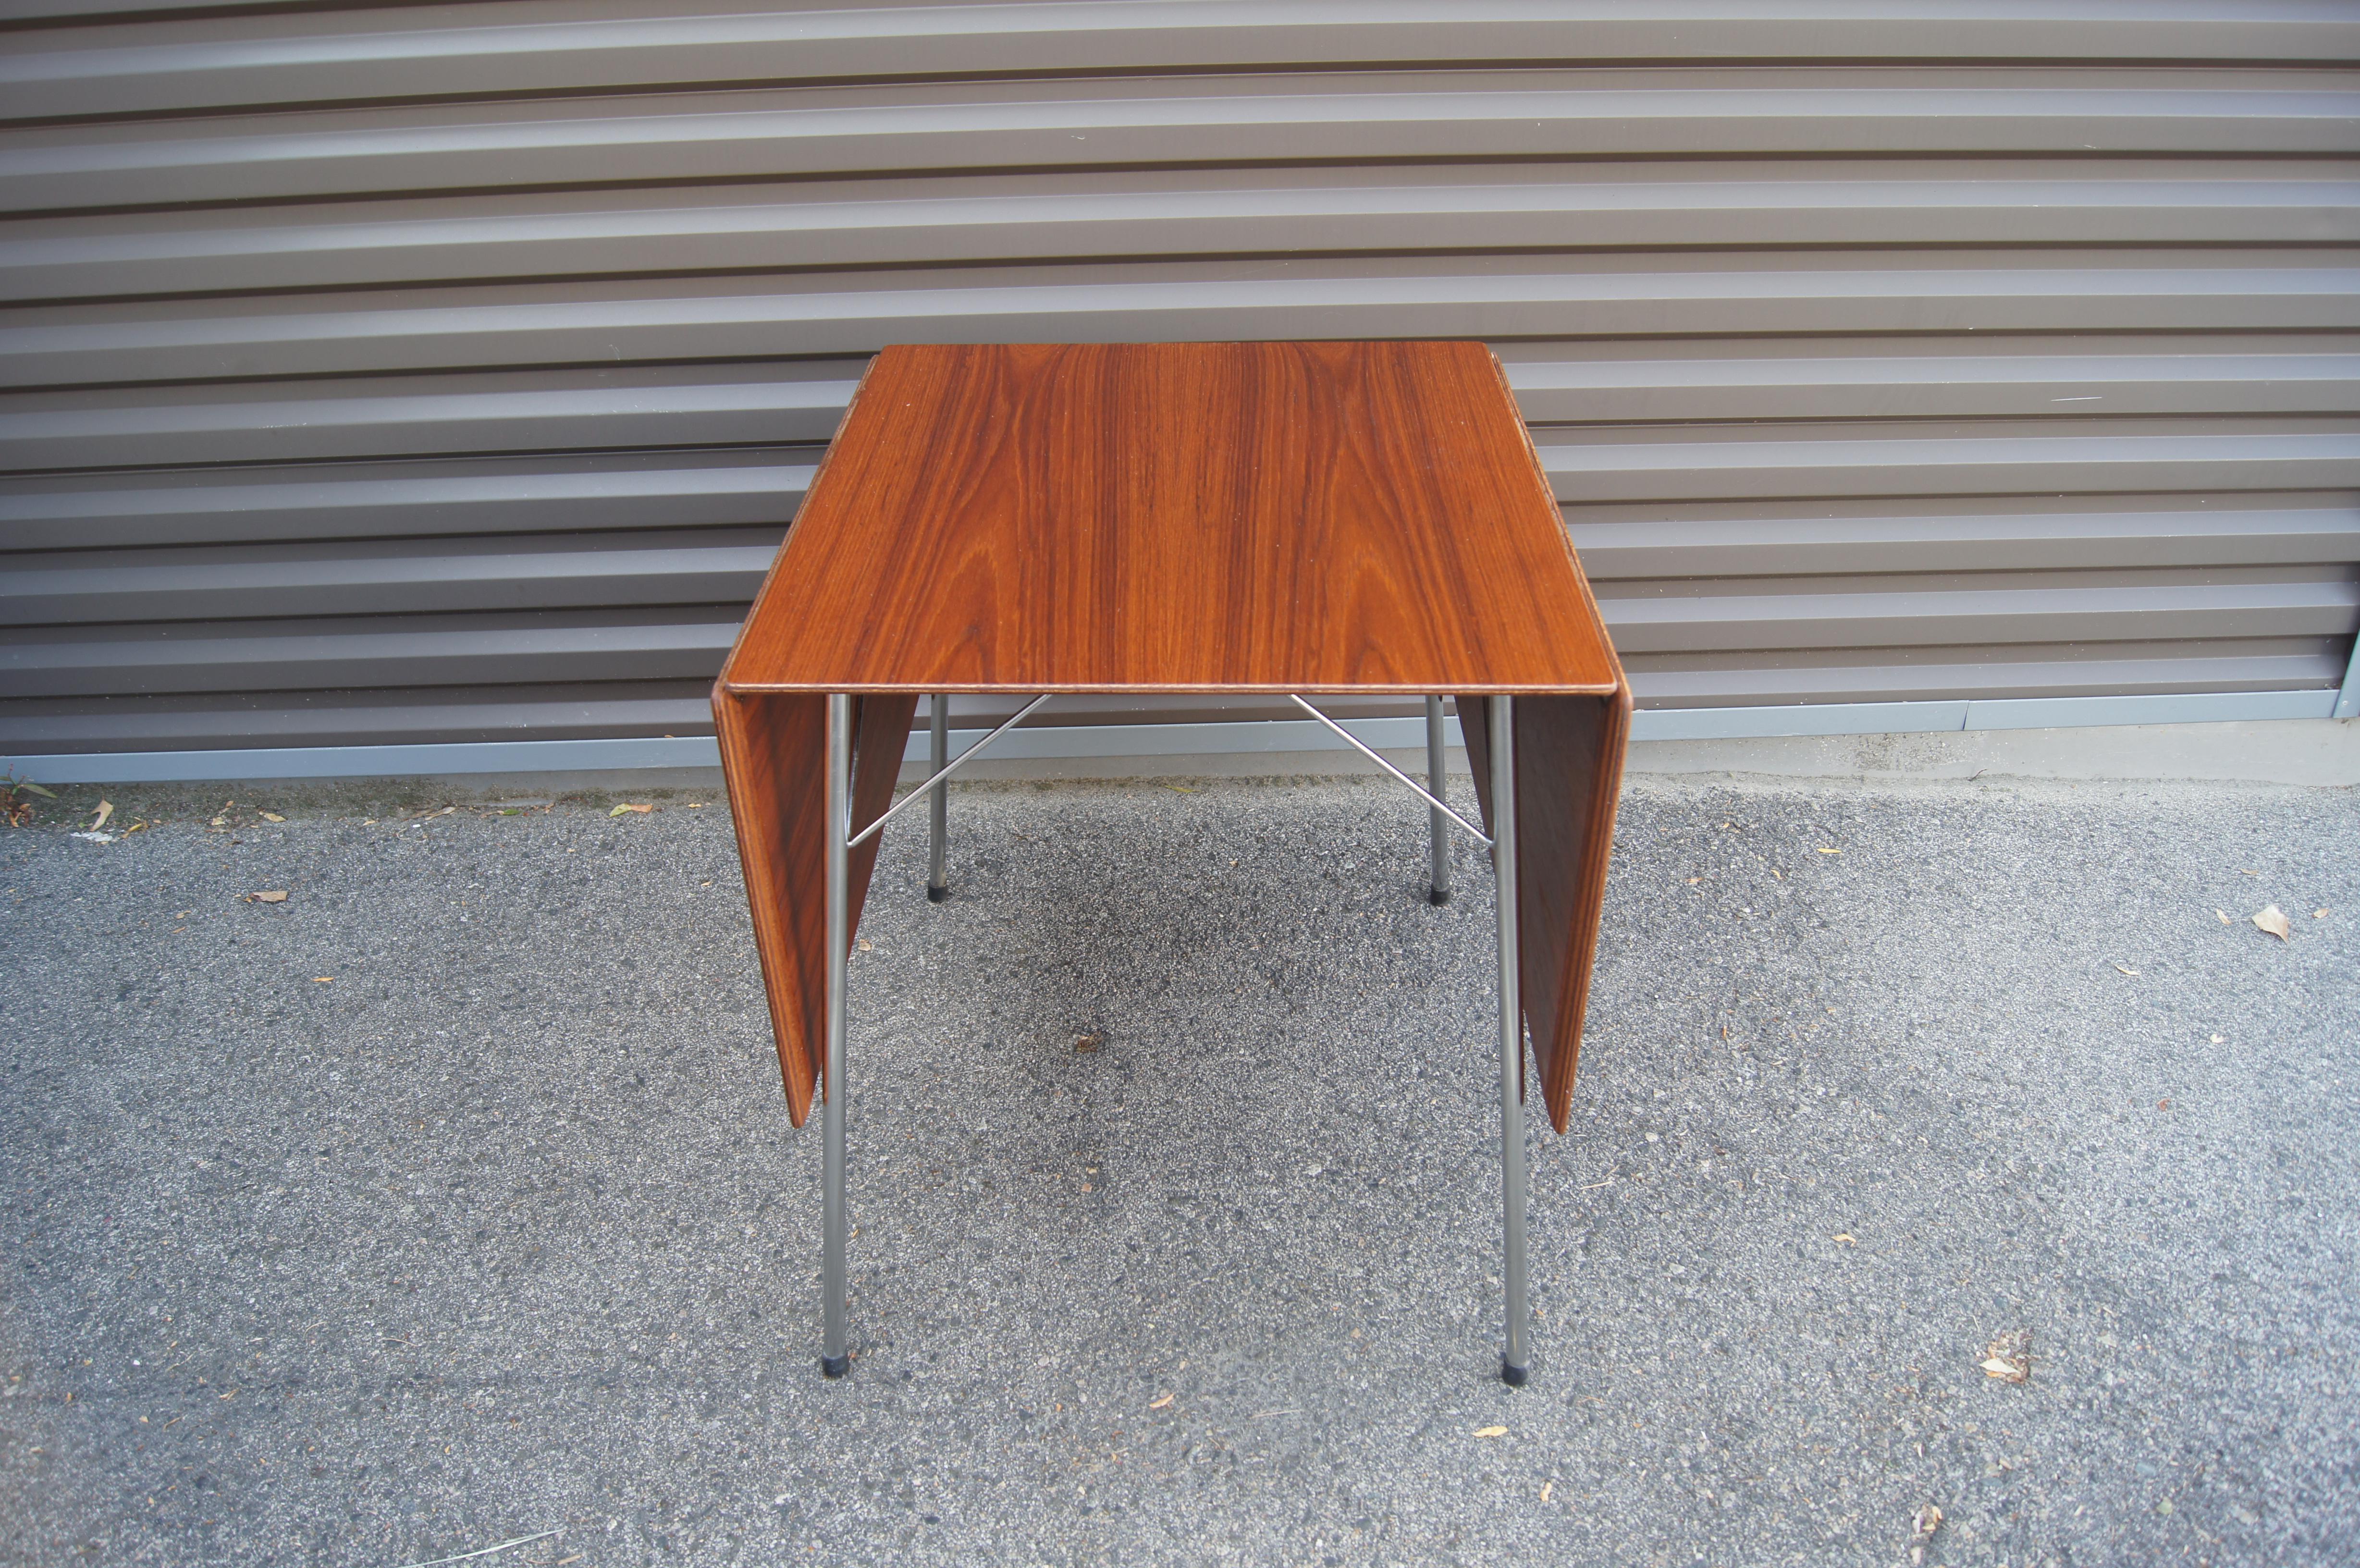 Conçue en 1952 par Arne Jacobsen pour Fritz Hansen, cette élégante table de salle à manger moderne scandinave, modèle 3601, présente un plateau en teck à feuilles tombantes sur une fine structure en acier poli. La table, qui s'étend jusqu'à 55,25